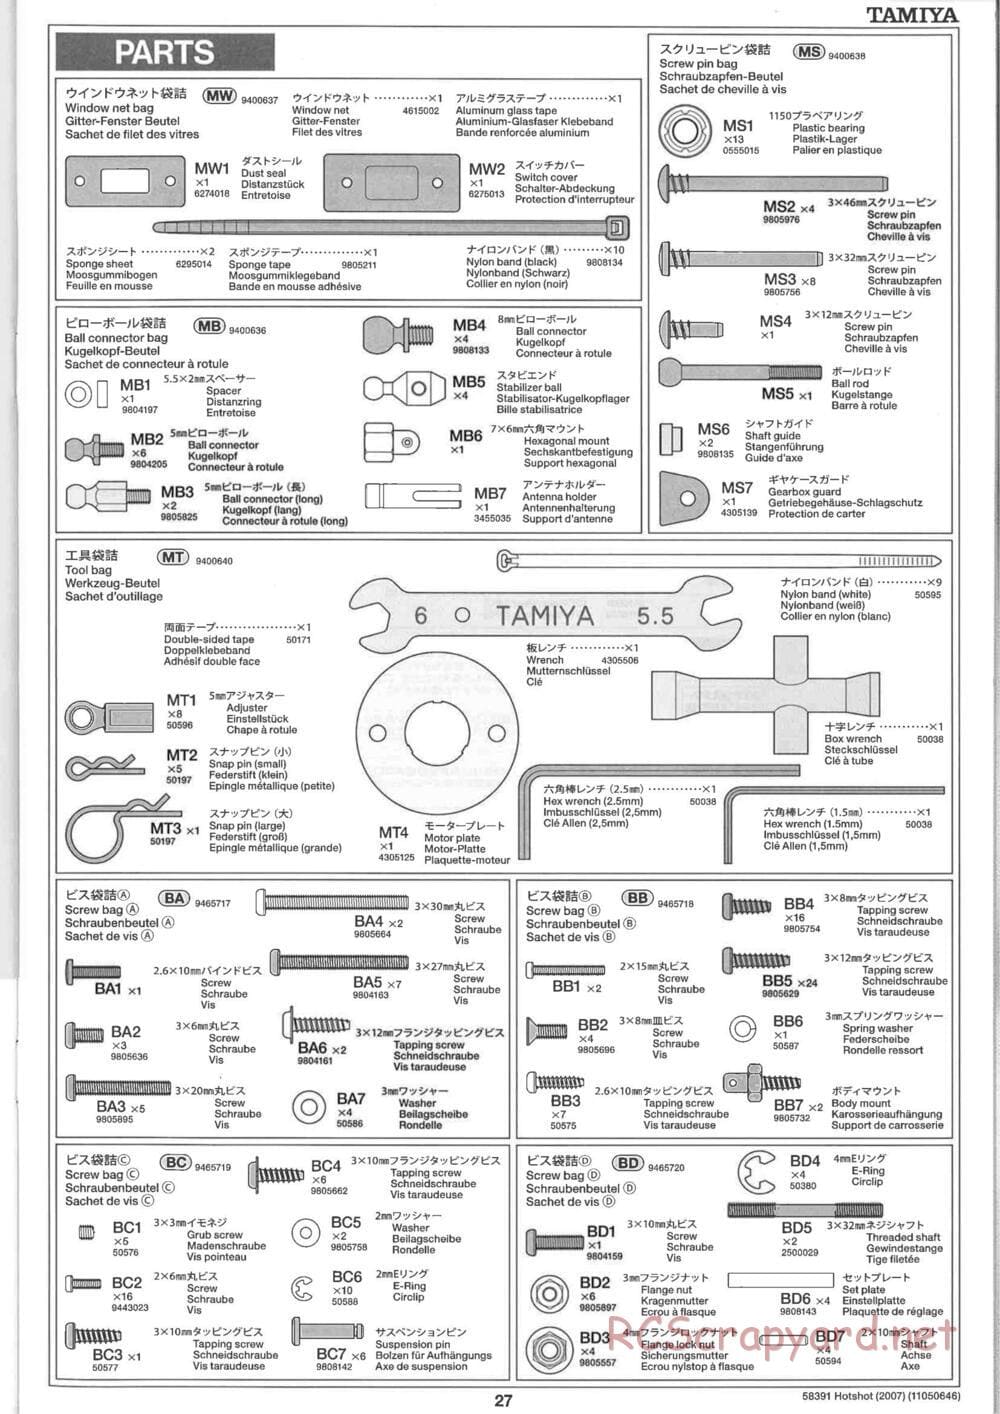 Tamiya - Hotshot - 2007 - HS Chassis - Manual - Page 27